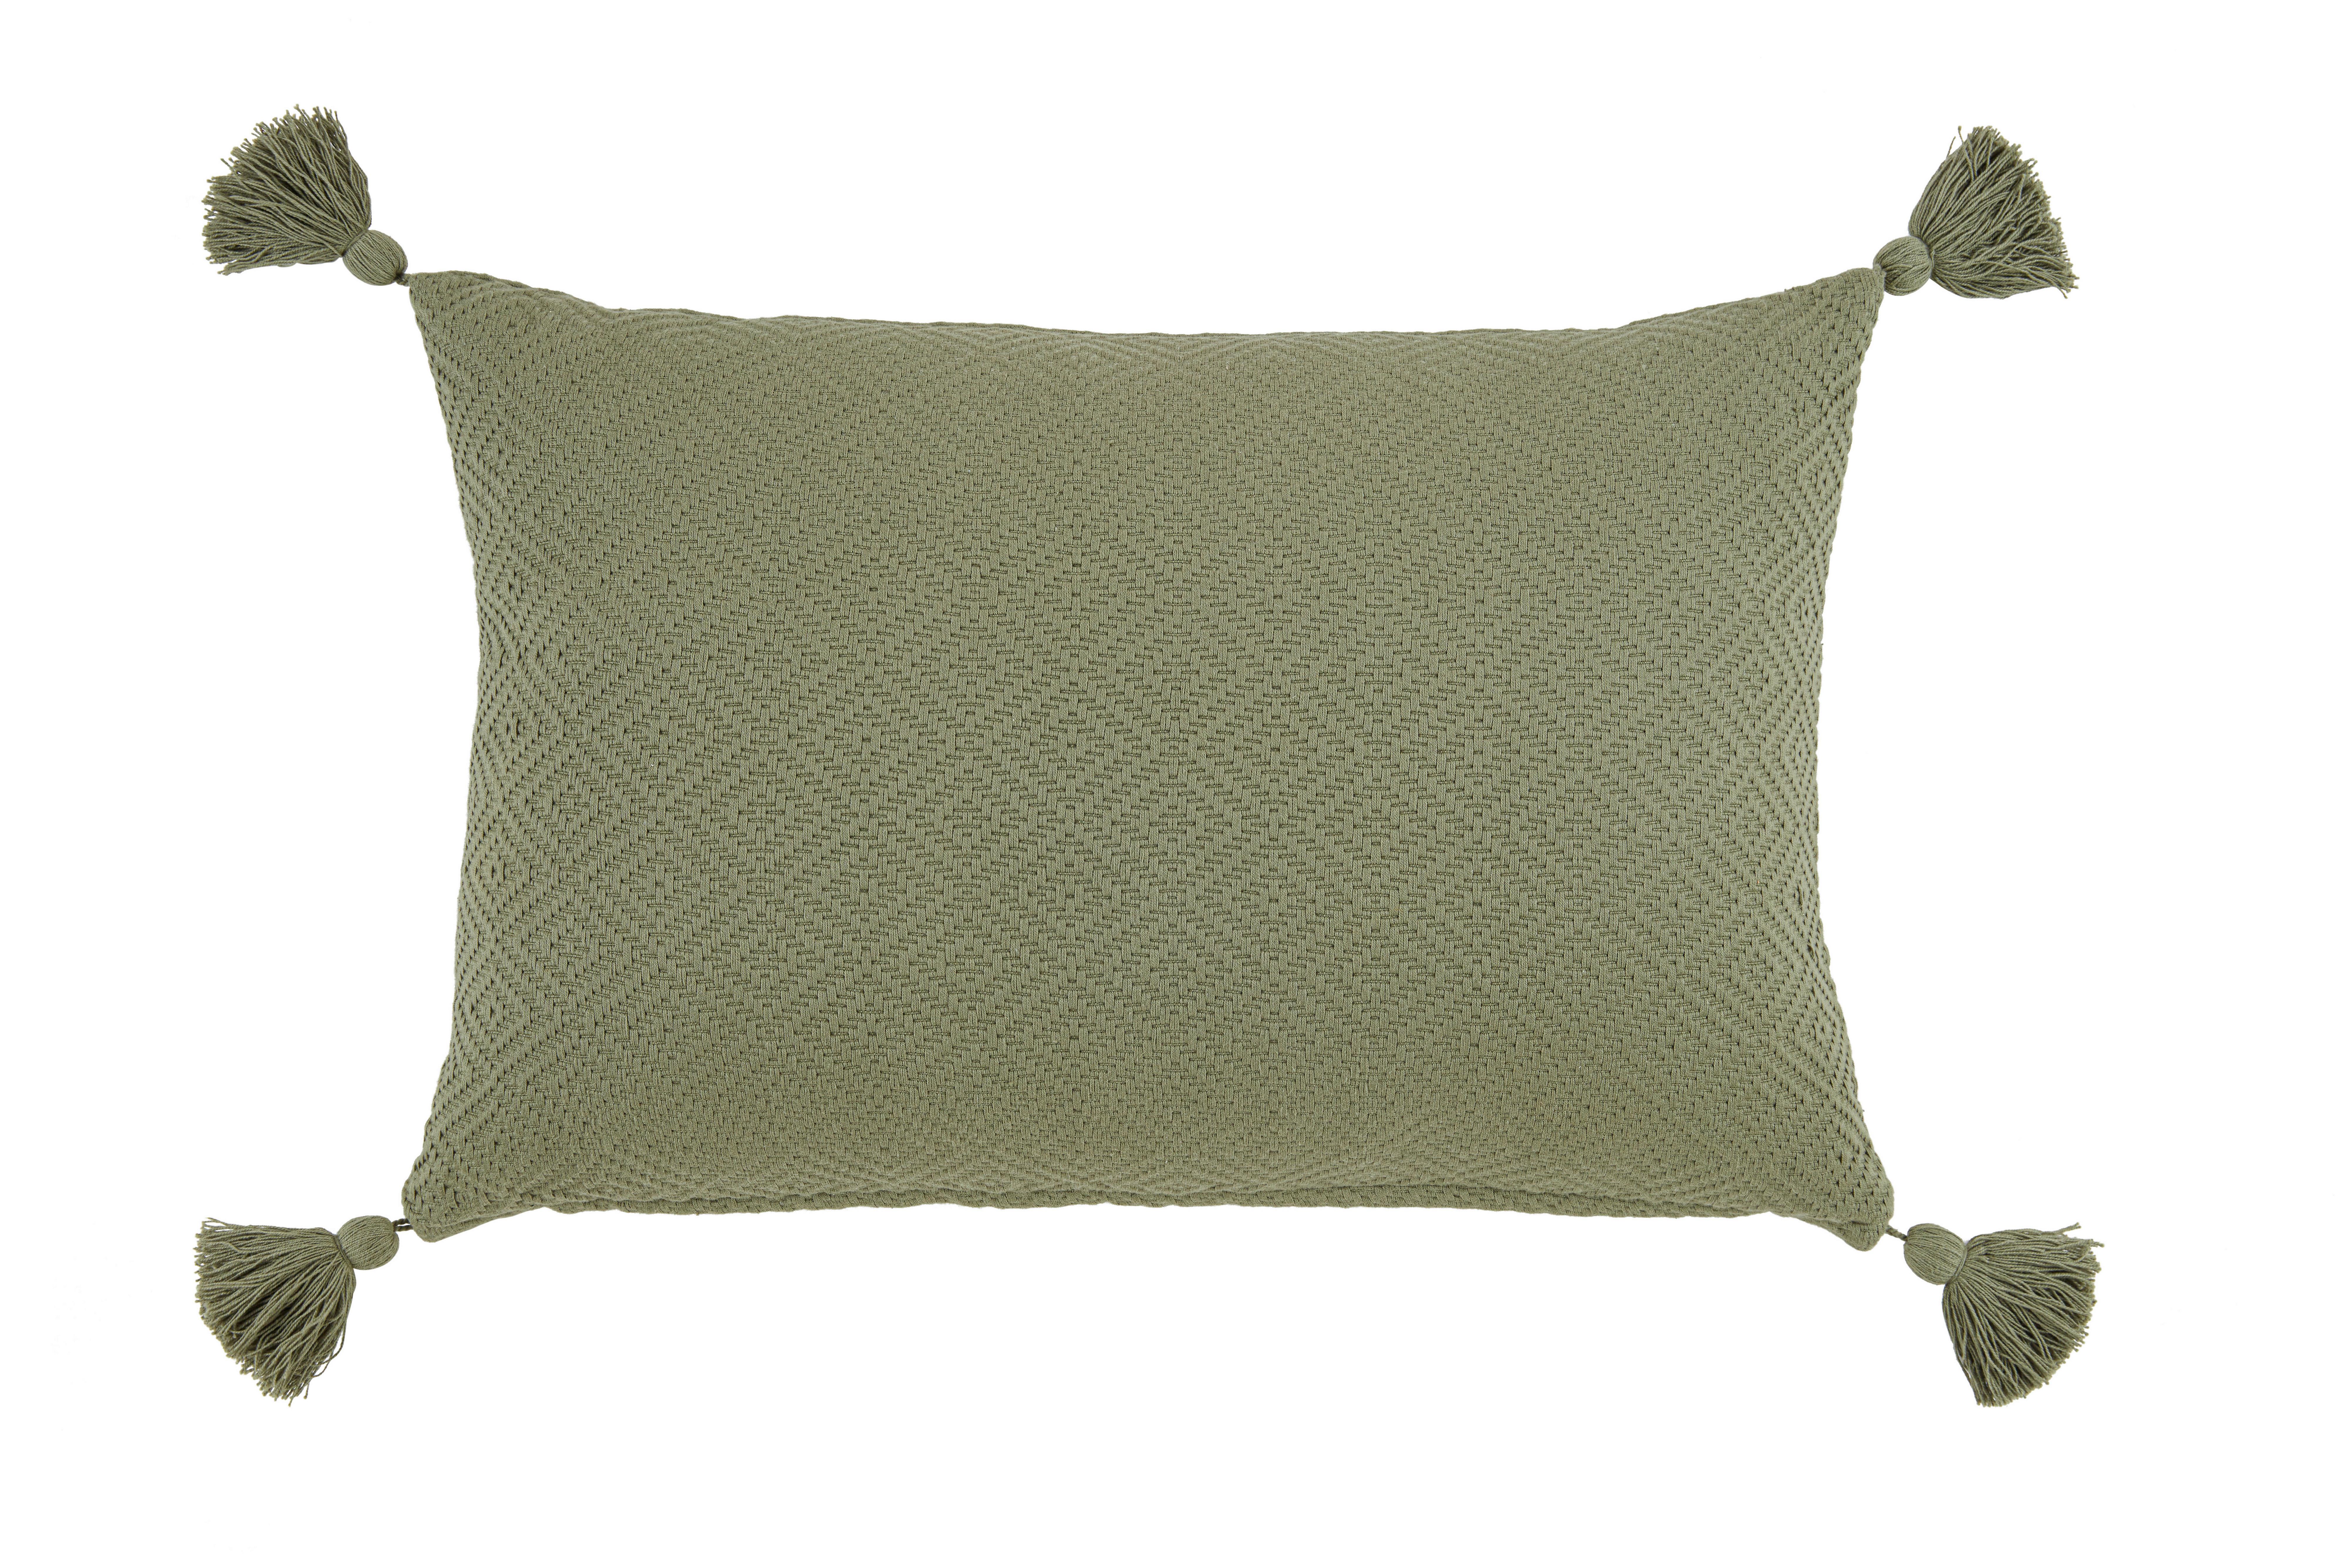 Dekorační Polštář Frieda, 40/60cm, Olivovězelená - olivově zelená, Moderní, textil (40/60cm) - Modern Living